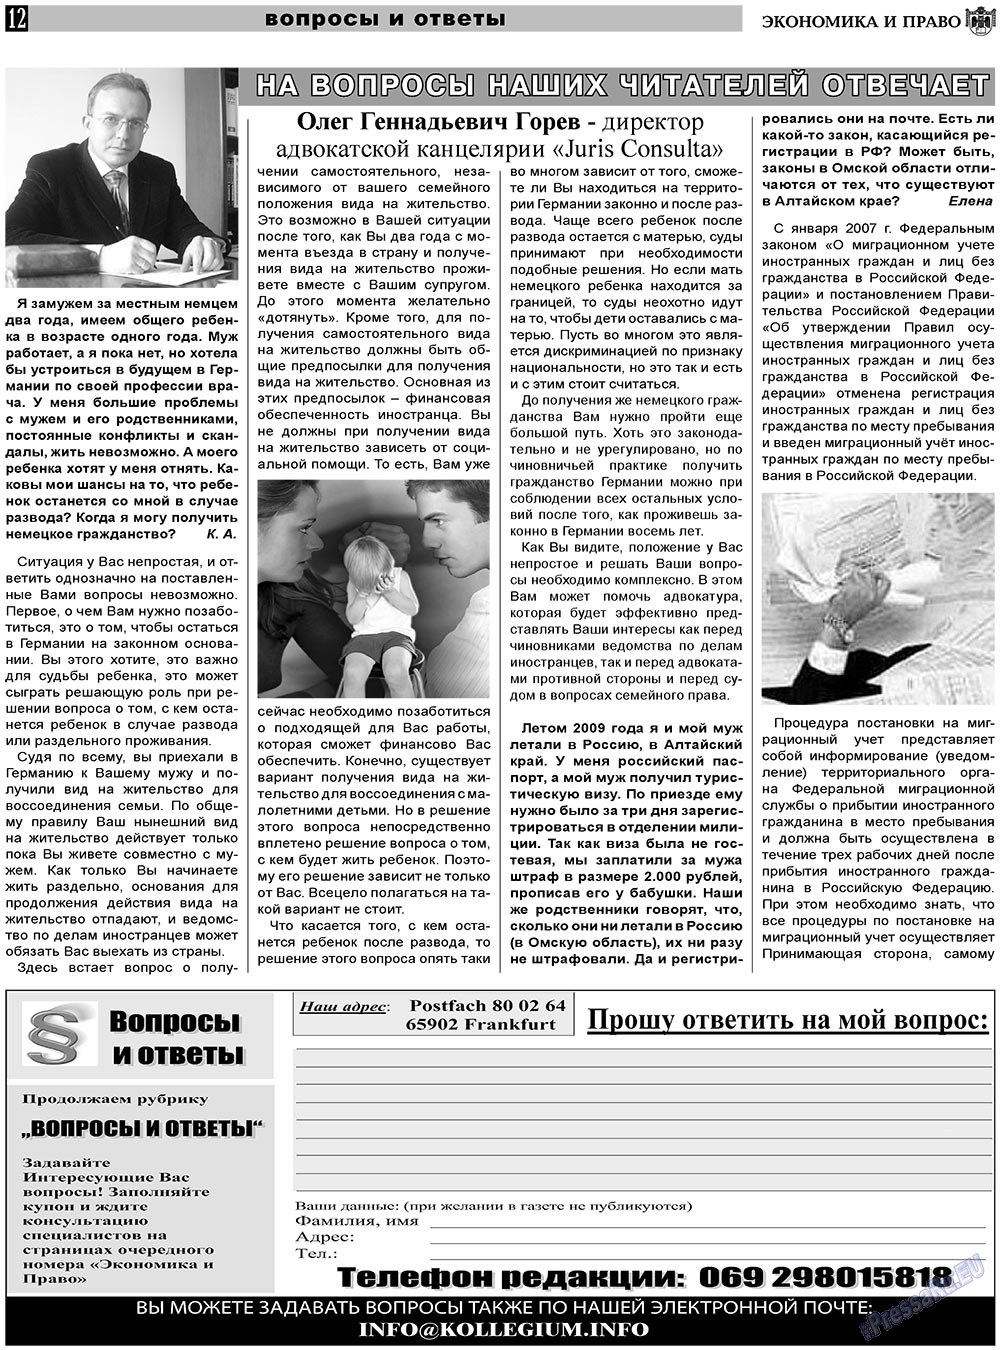 Экономика и право, газета. 2011 №5 стр.12